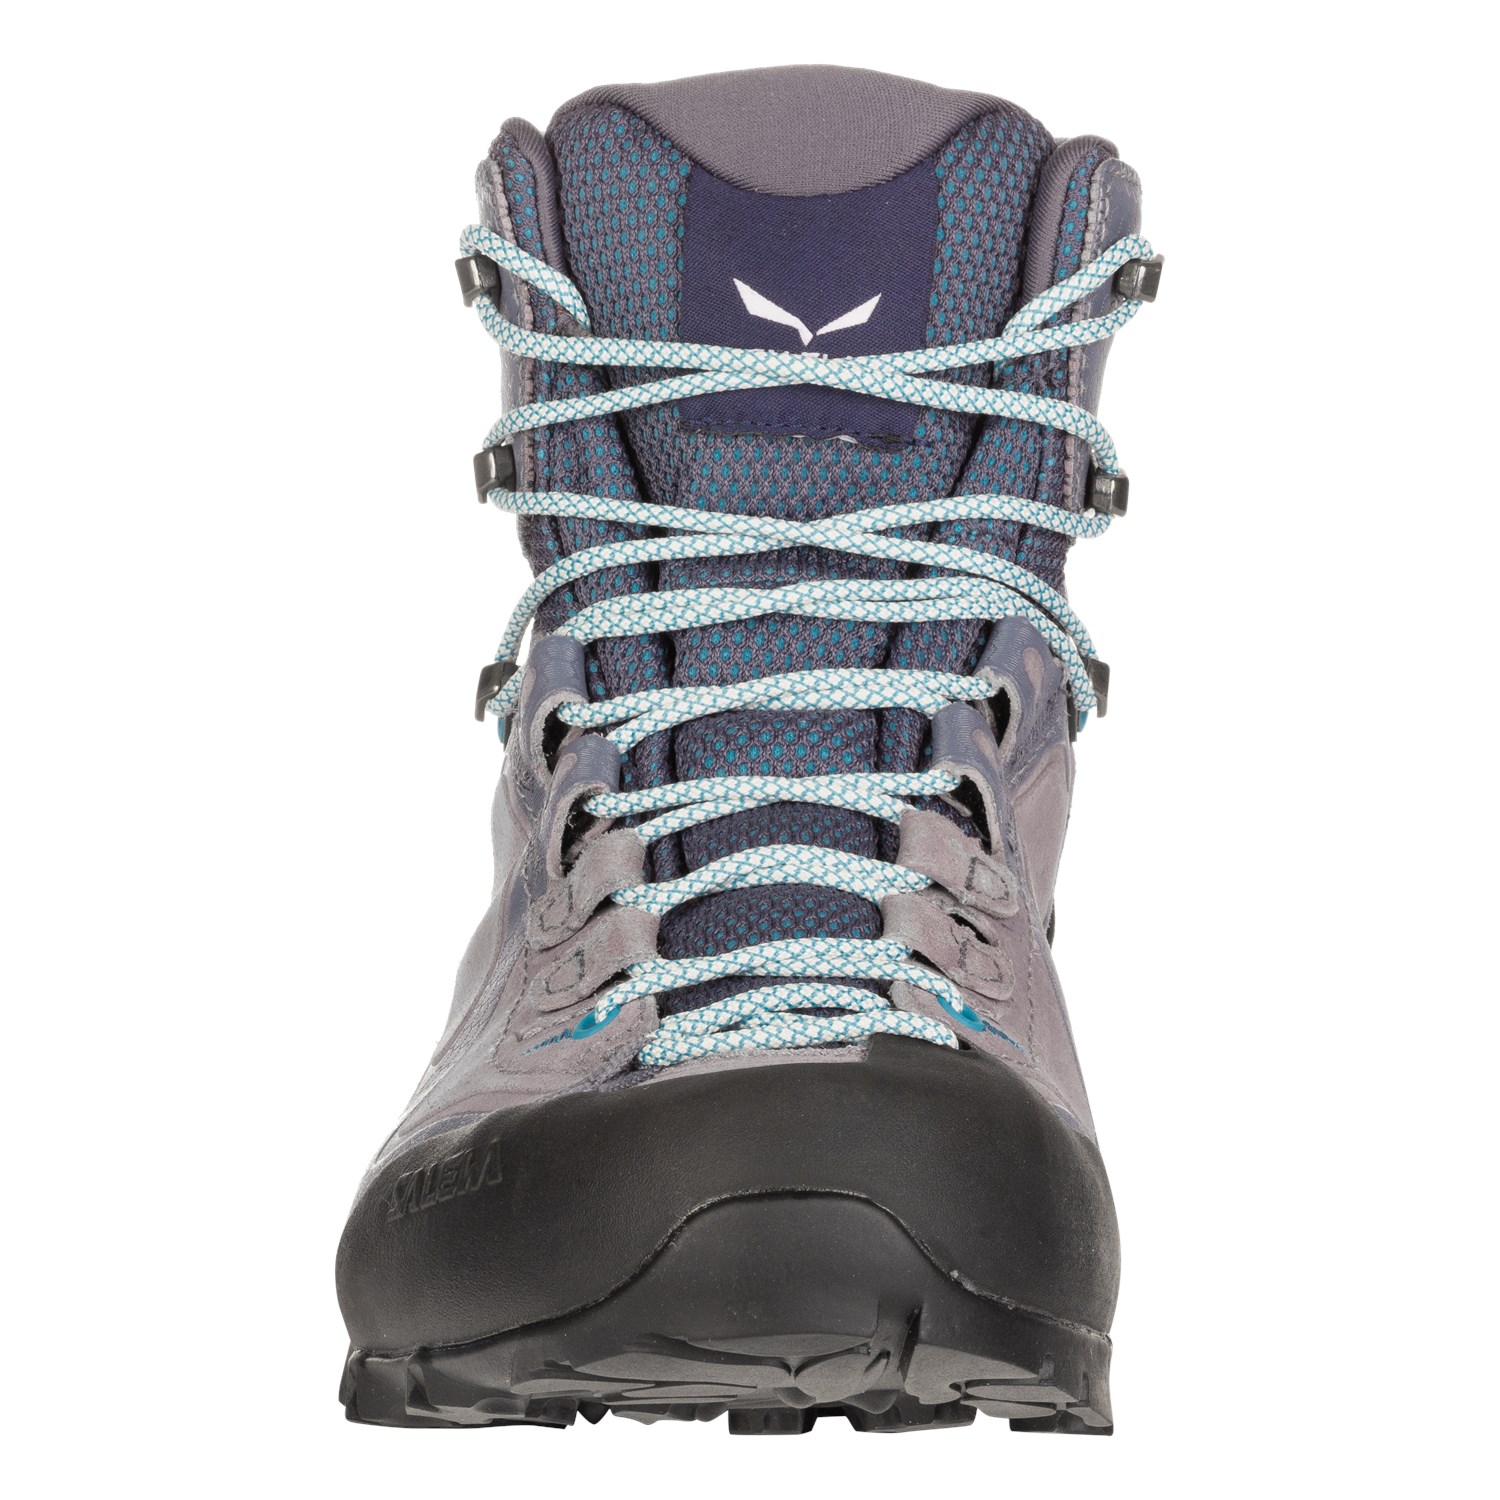 SALEWA Damen-Wander-Outdoor-Multisport-Schuhe Alpenviolet Mid GTX schwarz violet 